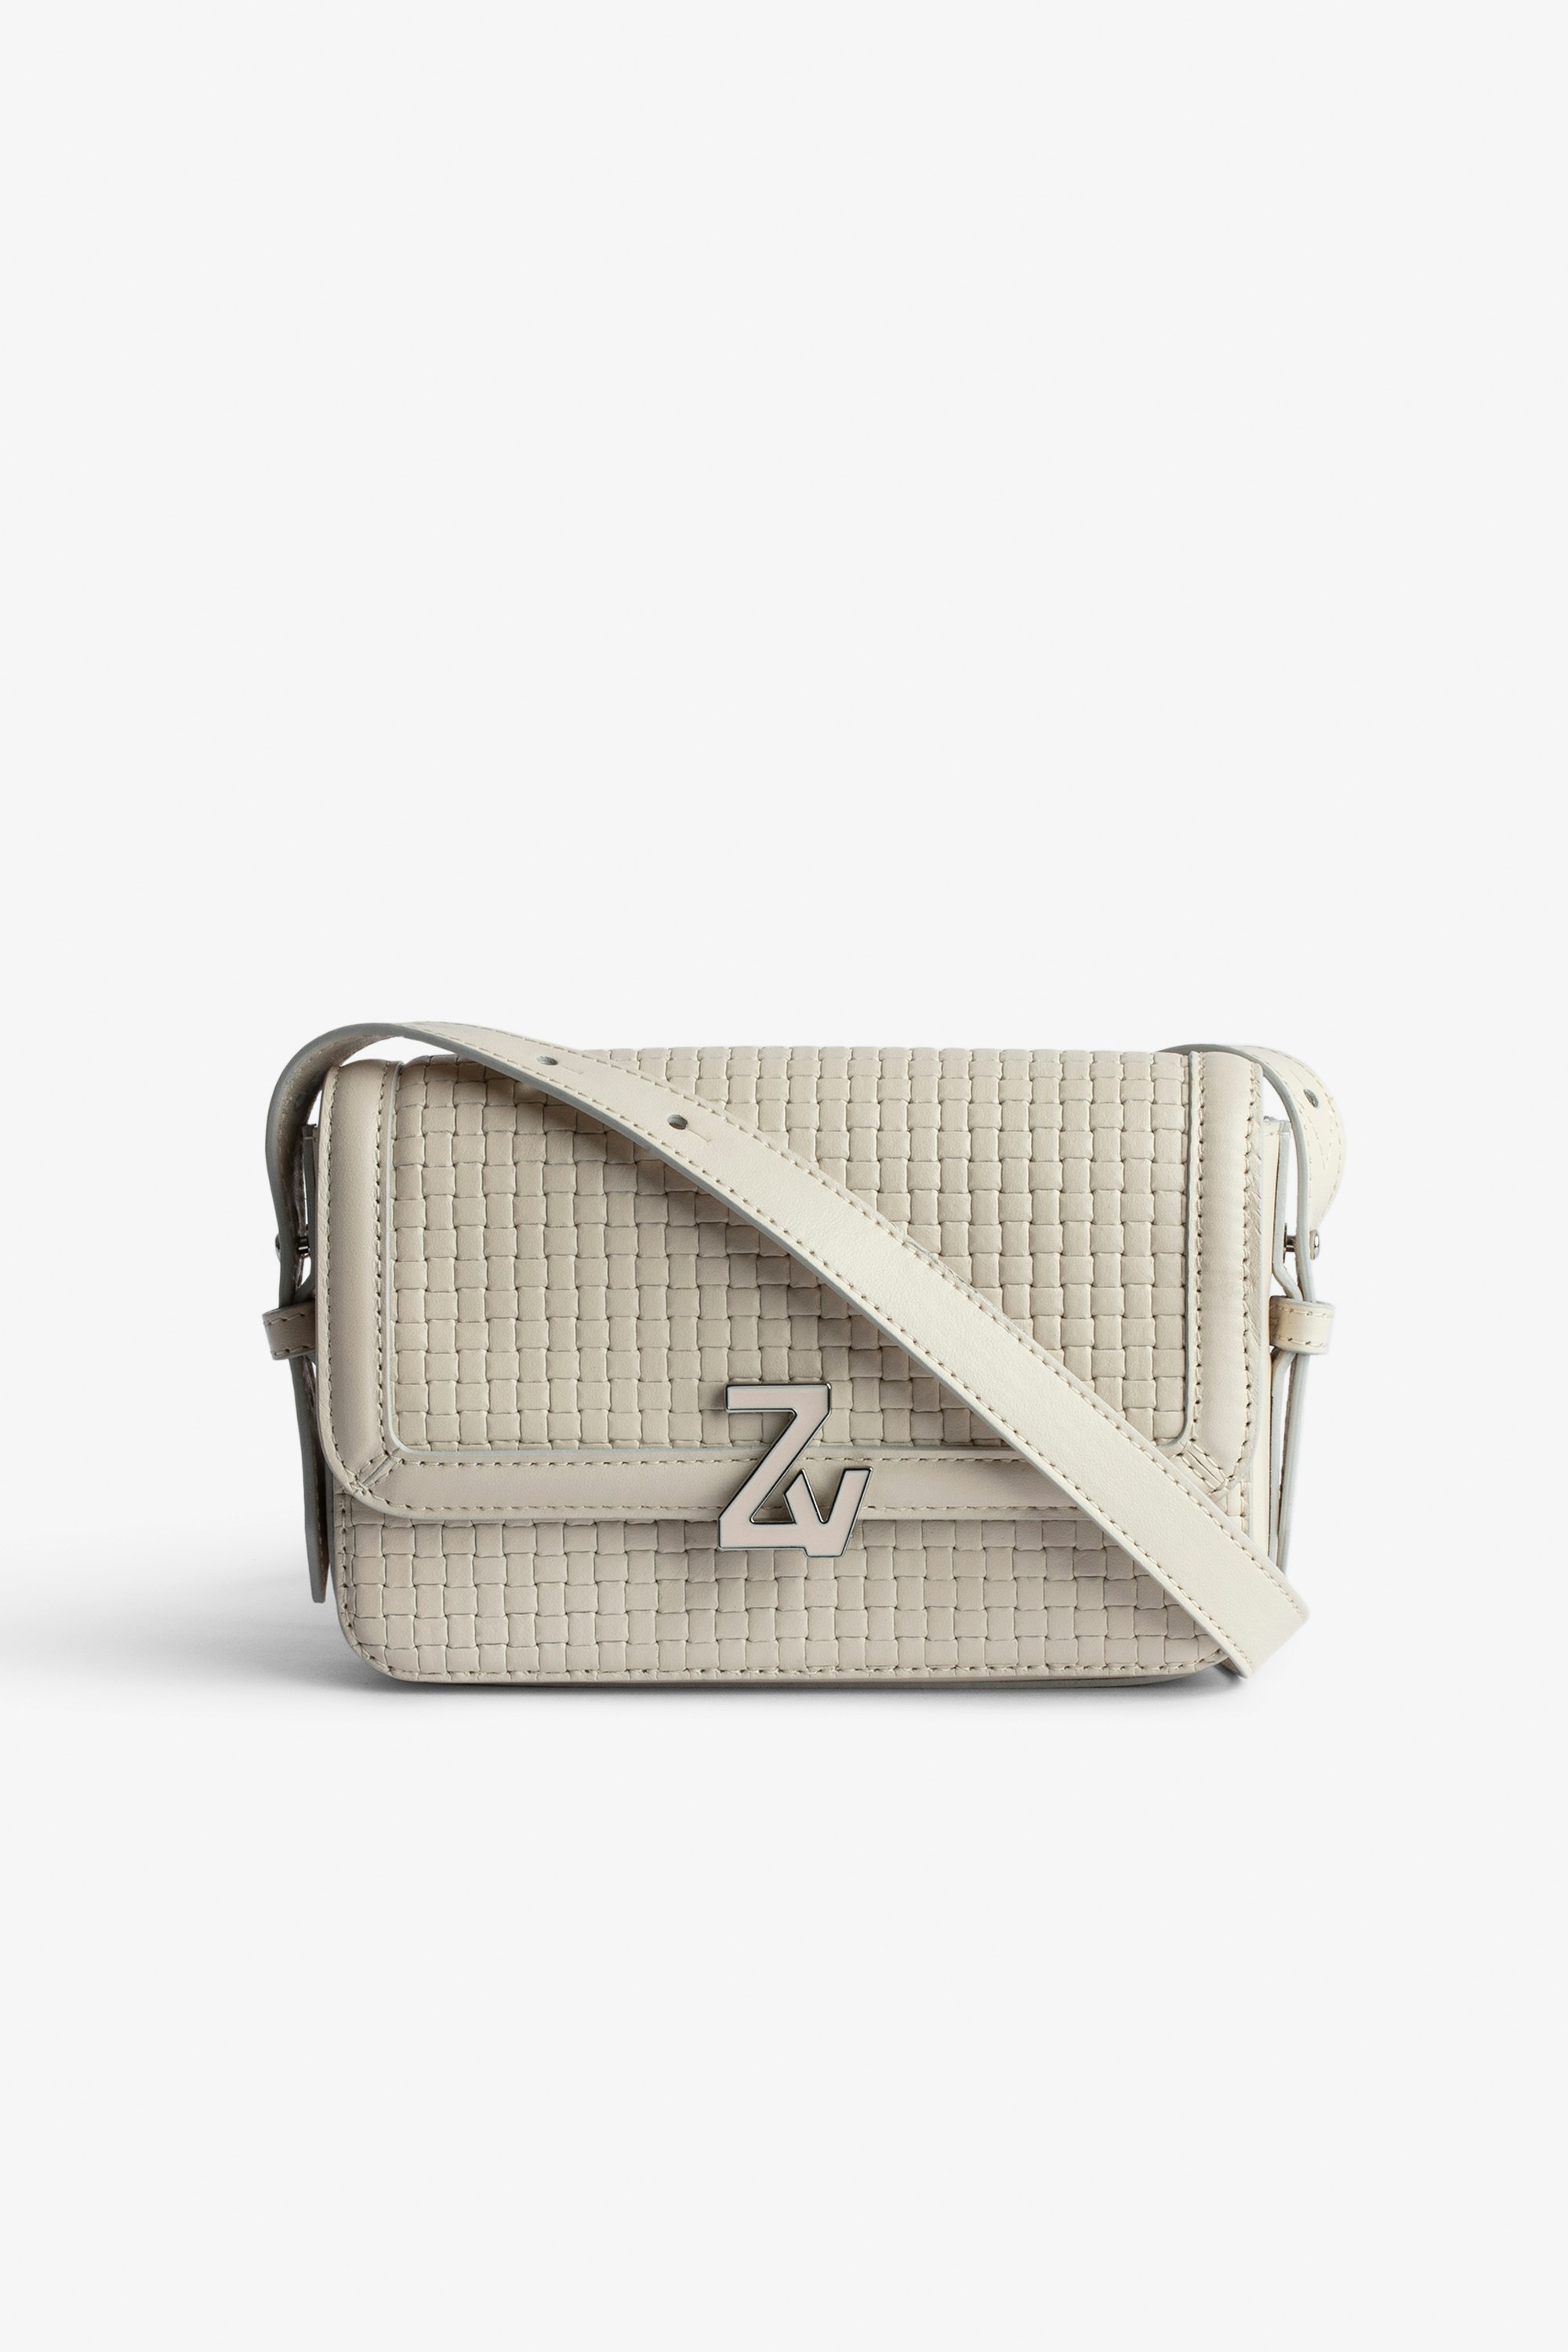 Borsa ZV Initiale Le Mini  Piccola borsa in pelle intrecciata écru con tracolla e fermaglio ZV - Donna